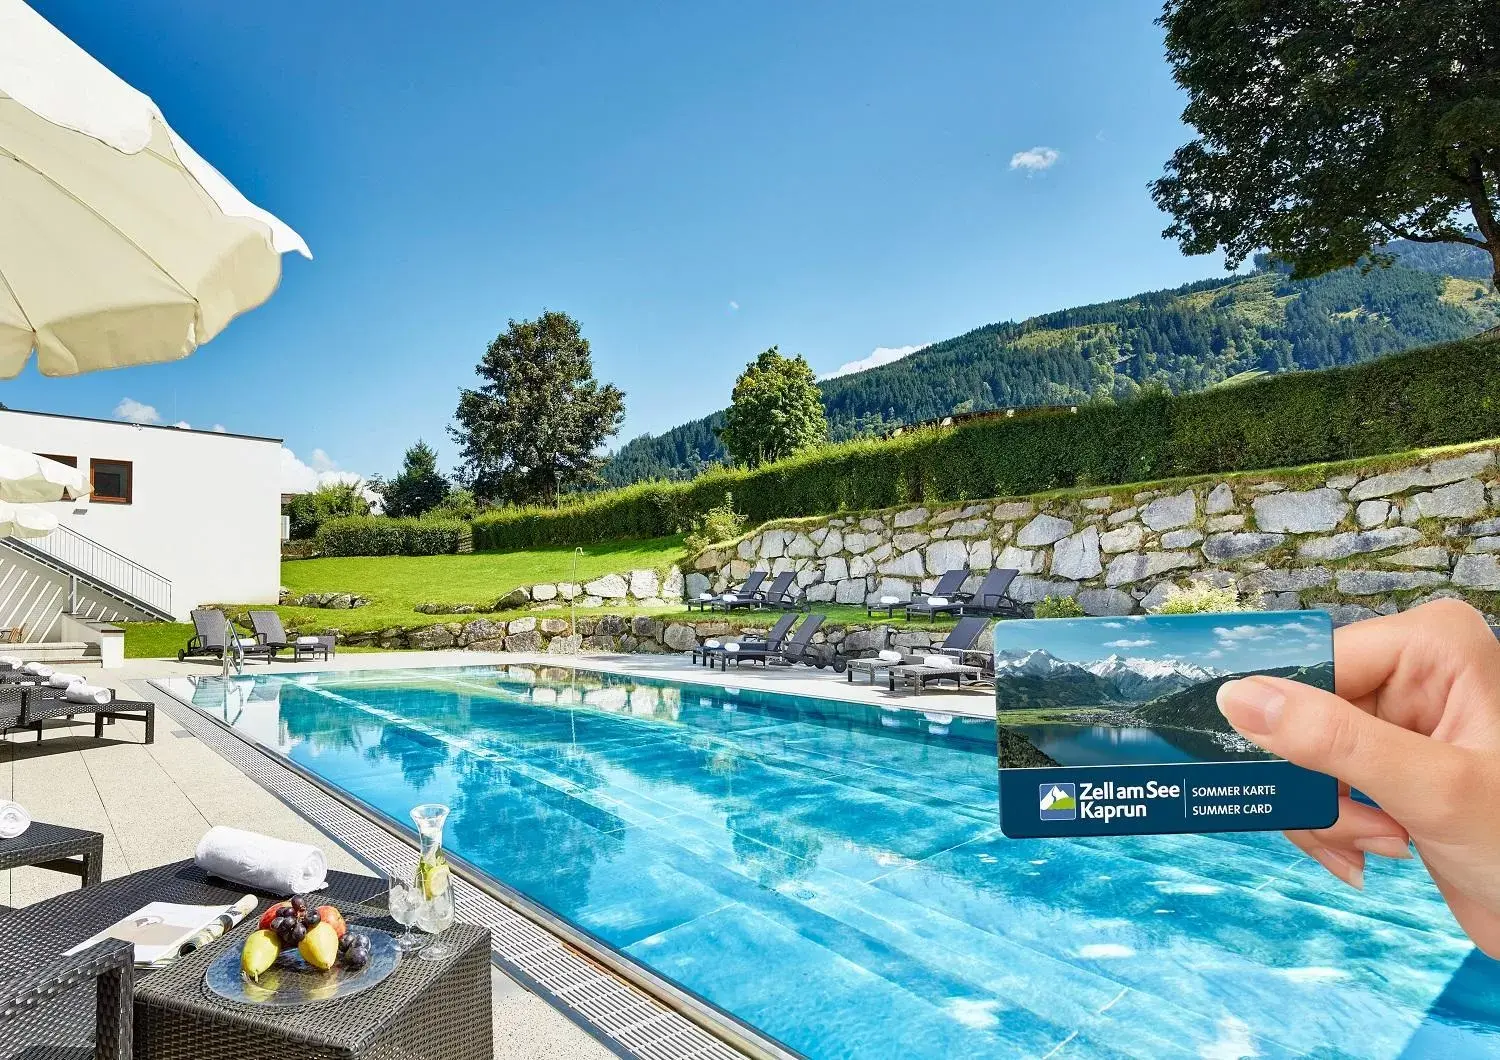 Pool view, Swimming Pool in Das Alpenhaus Kaprun